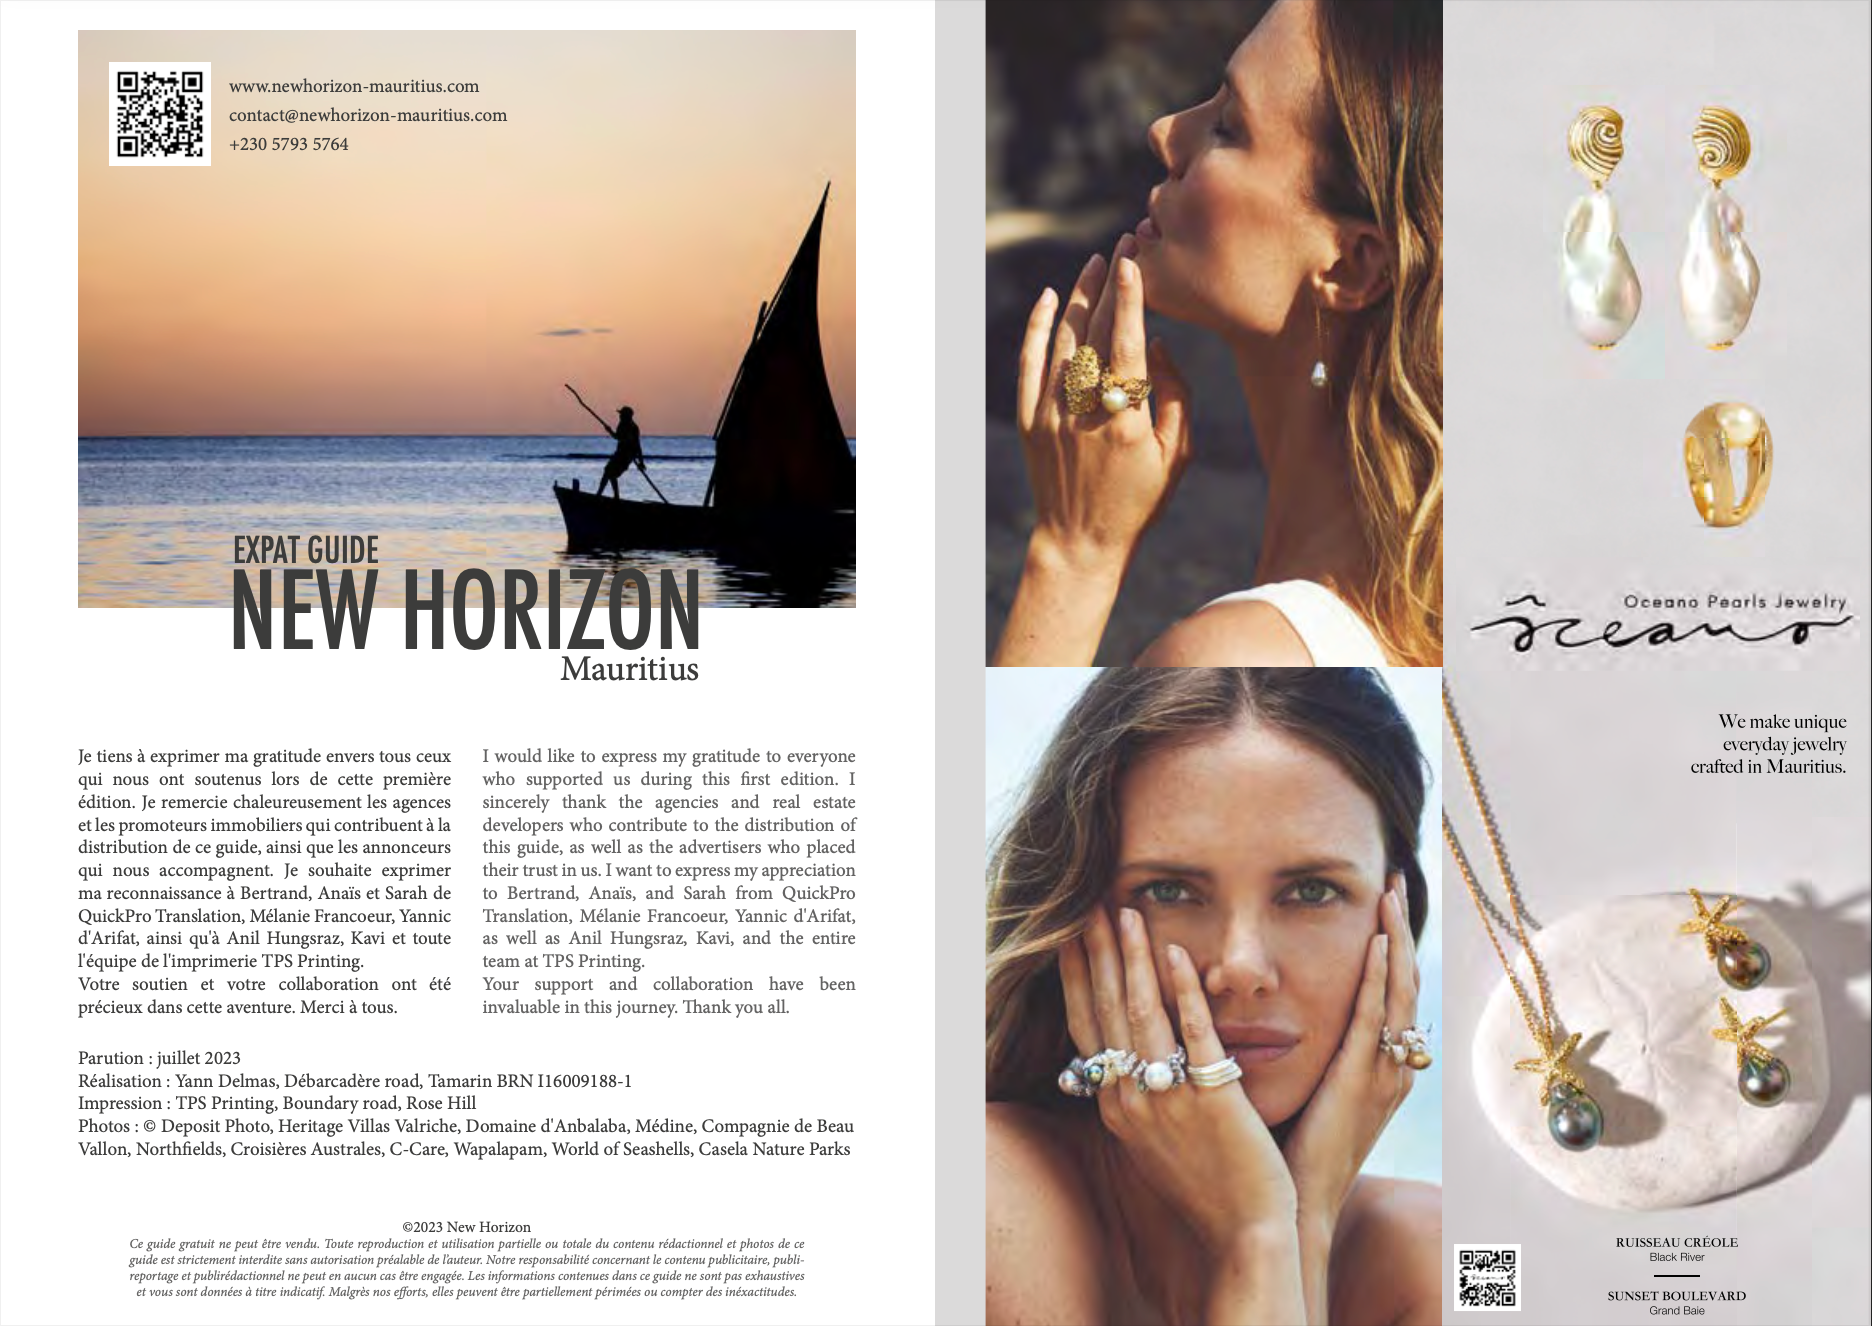 Oceano Pearls in New Horizon Expat Guide